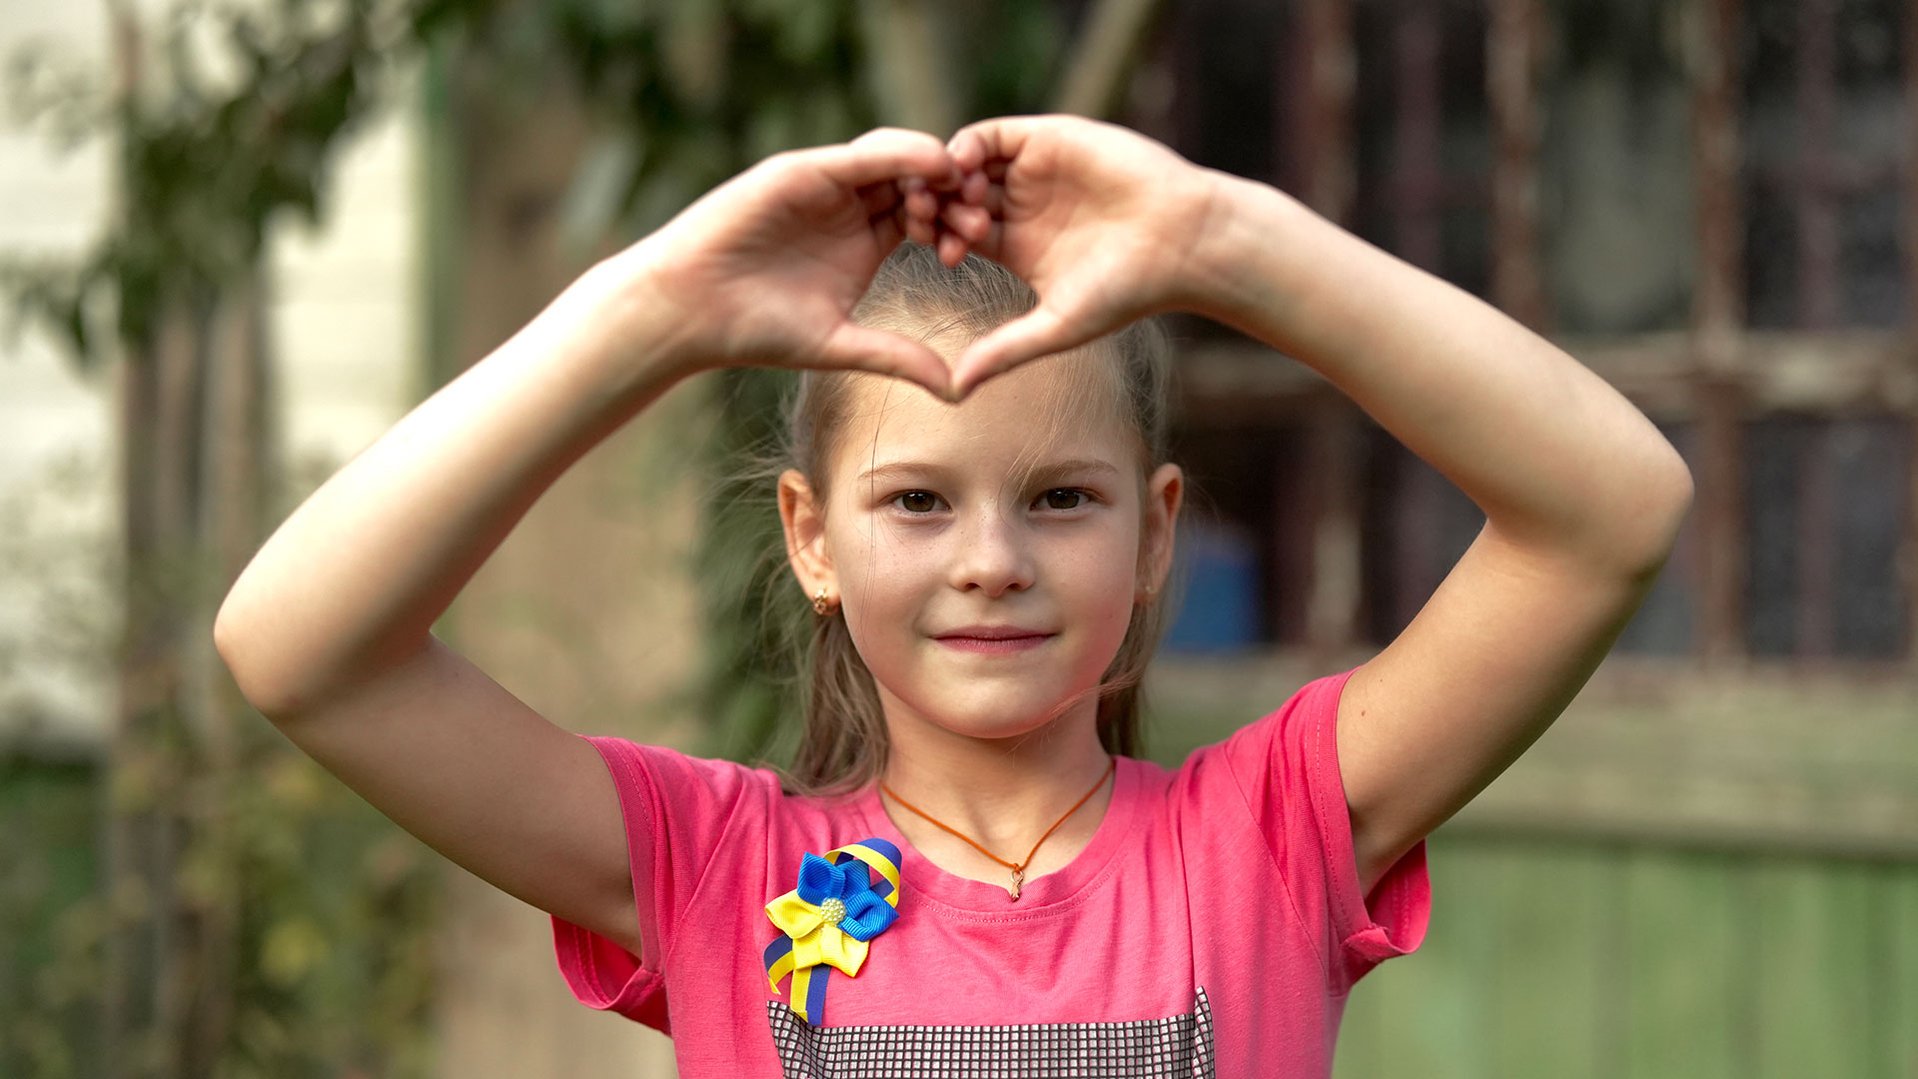 Natalya uit Oekraïne maakt een hartje met haar hand op onze veilige plek